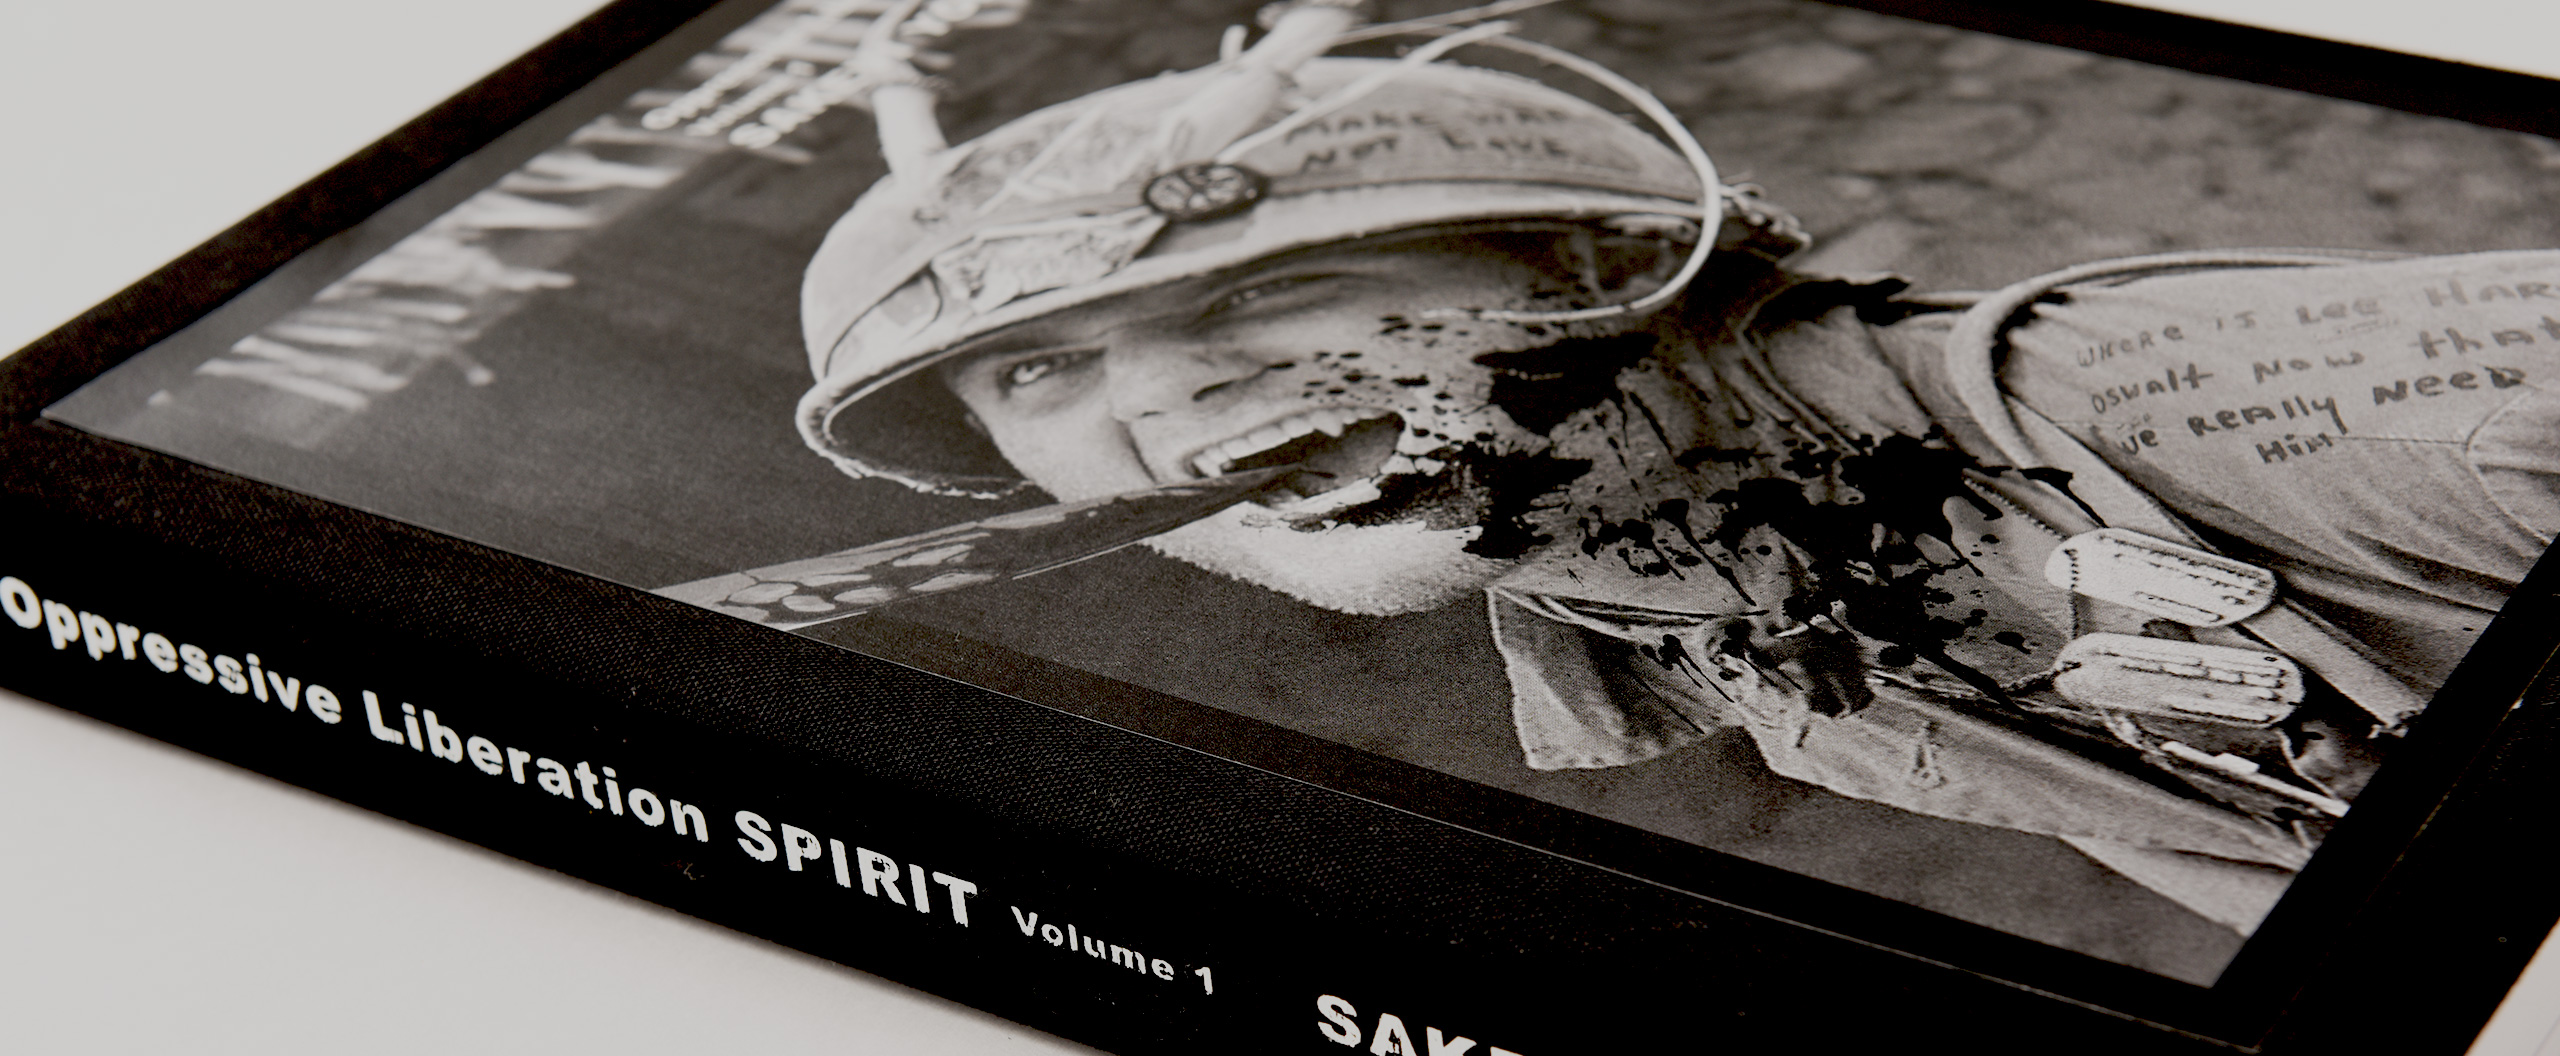 Oppressive Liberation SPIRIT Volume 1 SAKEVI YOKOYAMA